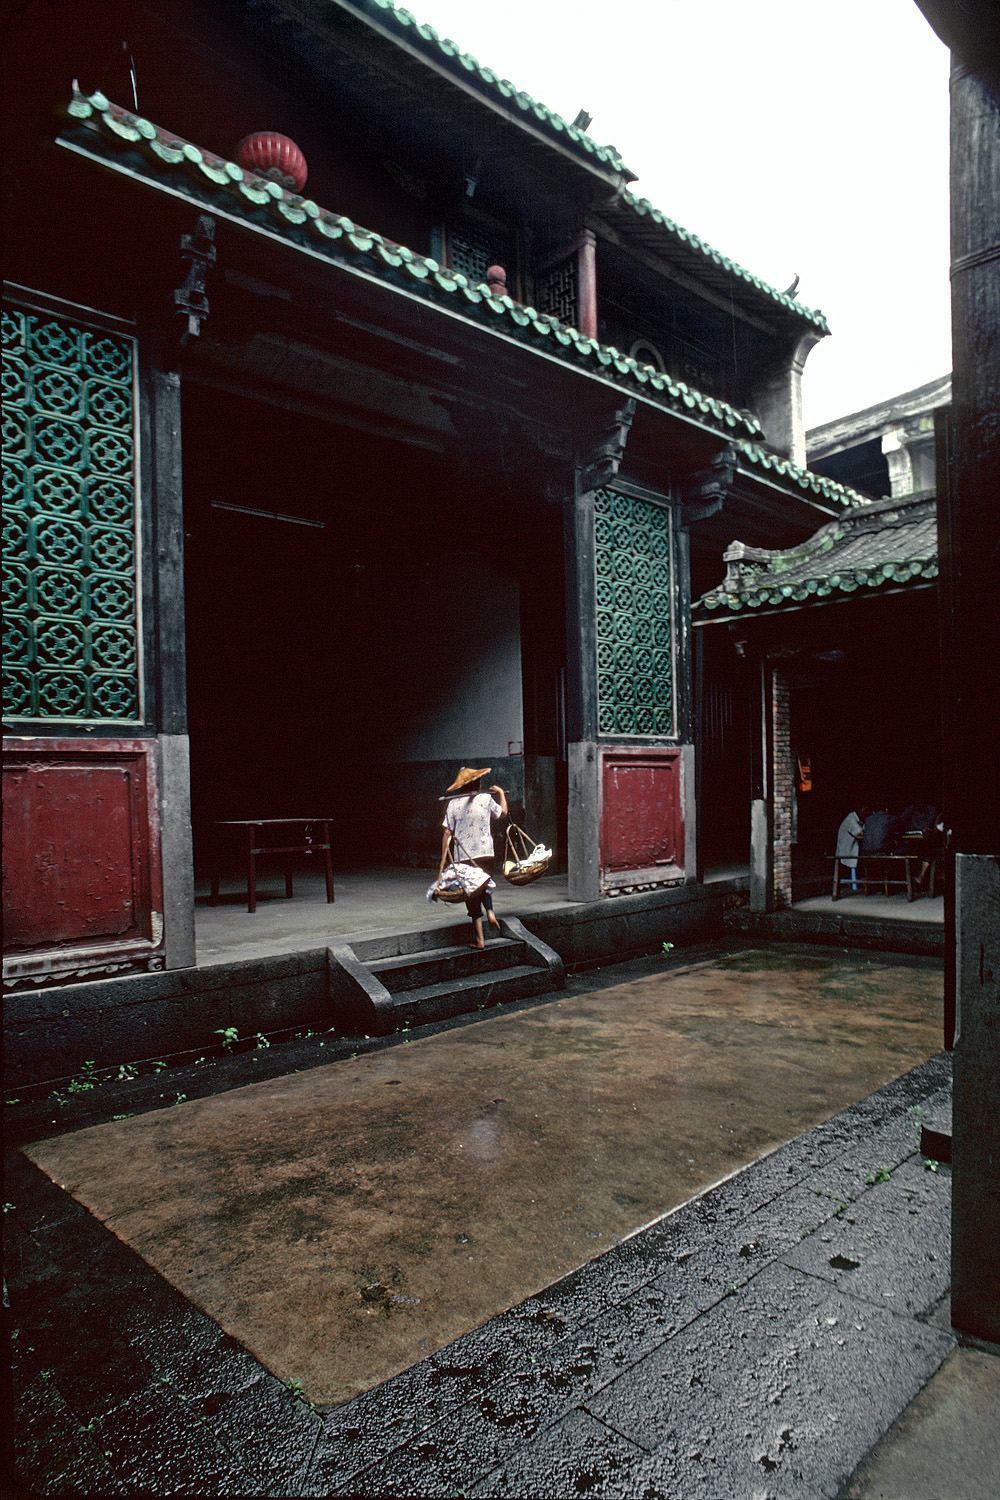 bill-hocker-clan-house-courtyard-fujian-province-china-2002